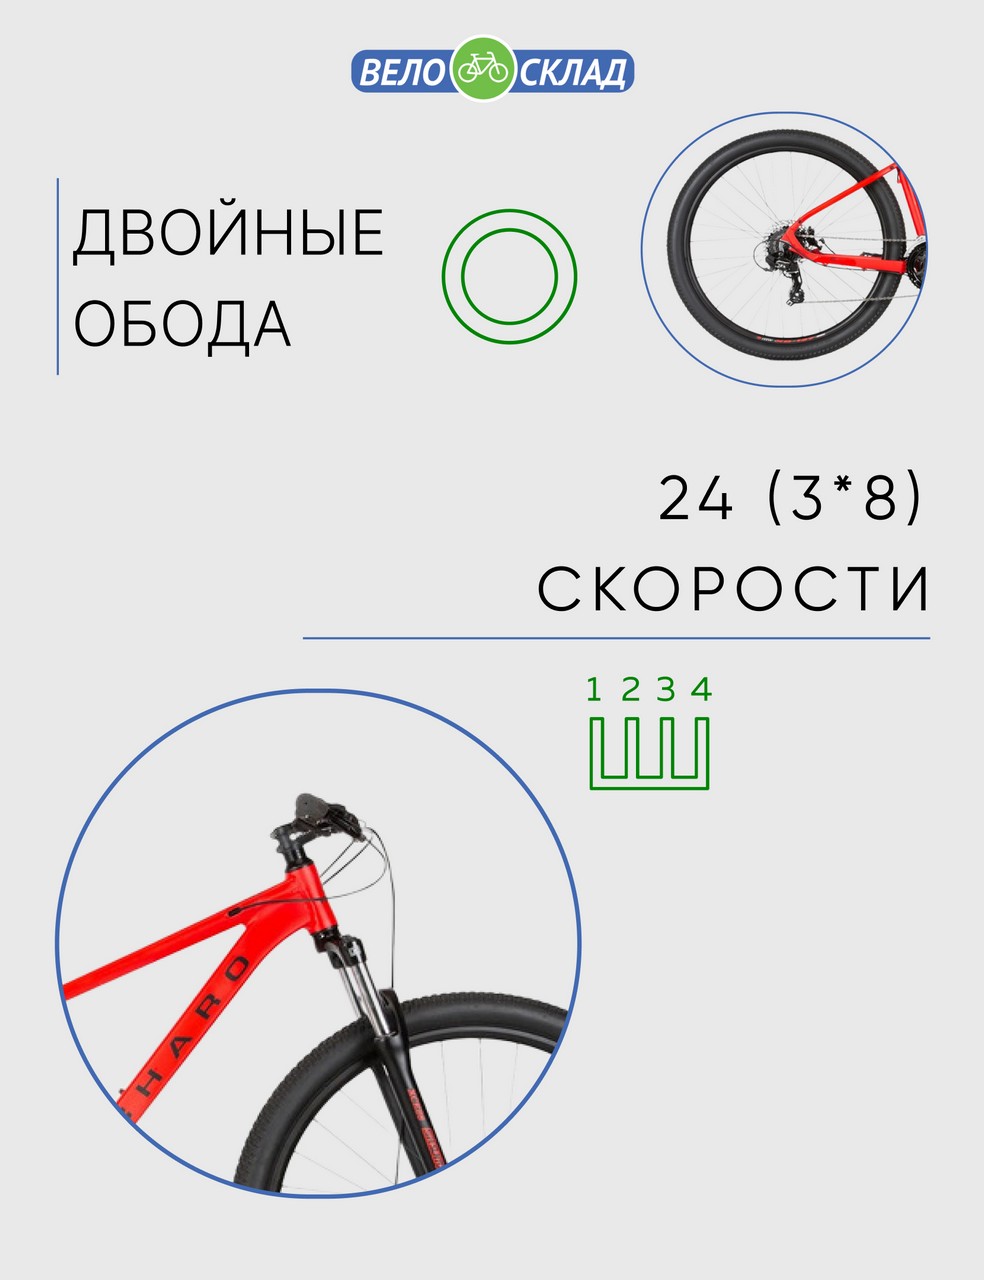 Горный велосипед Haro Flightline Two 29 DLX, год 2021, цвет Красный, ростовка 18